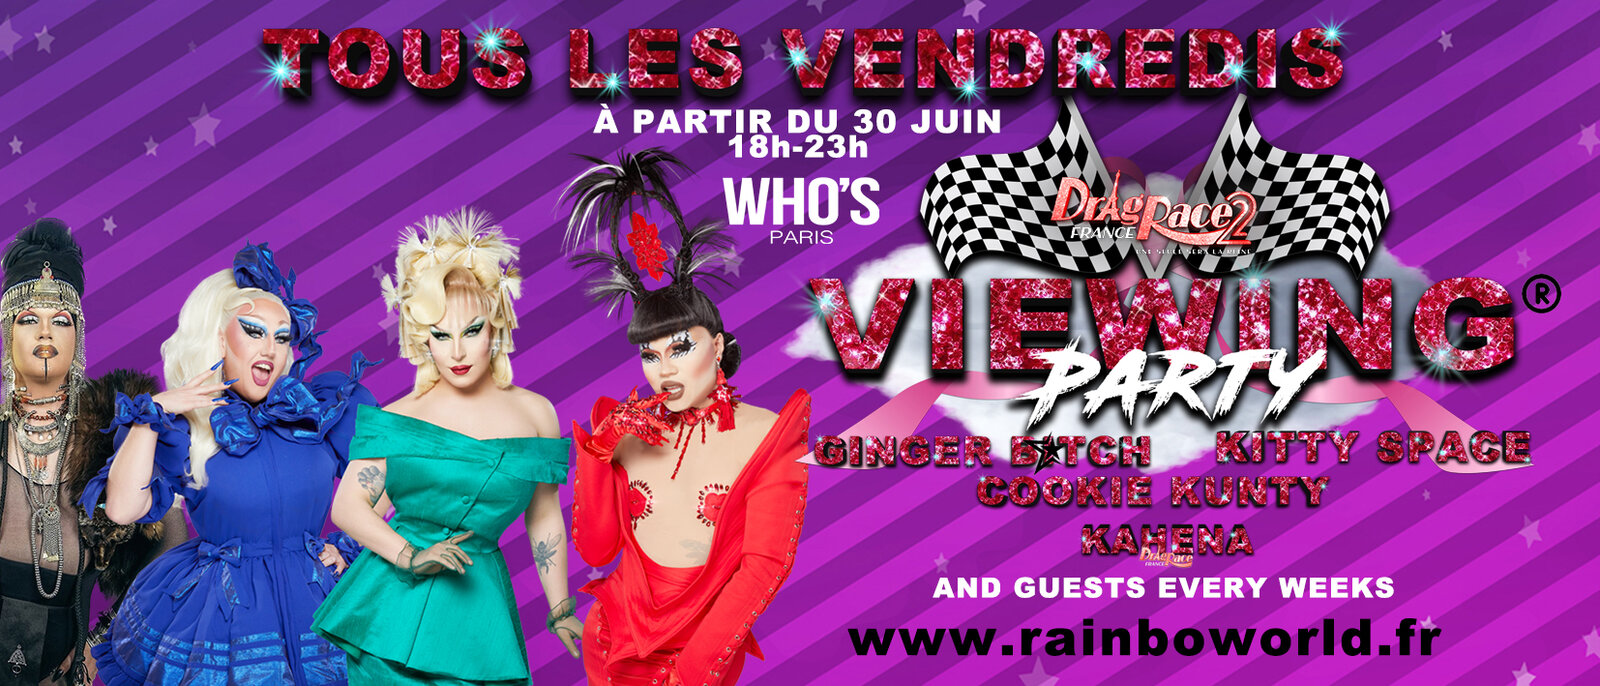 Les viewing parties à Paris : Who's